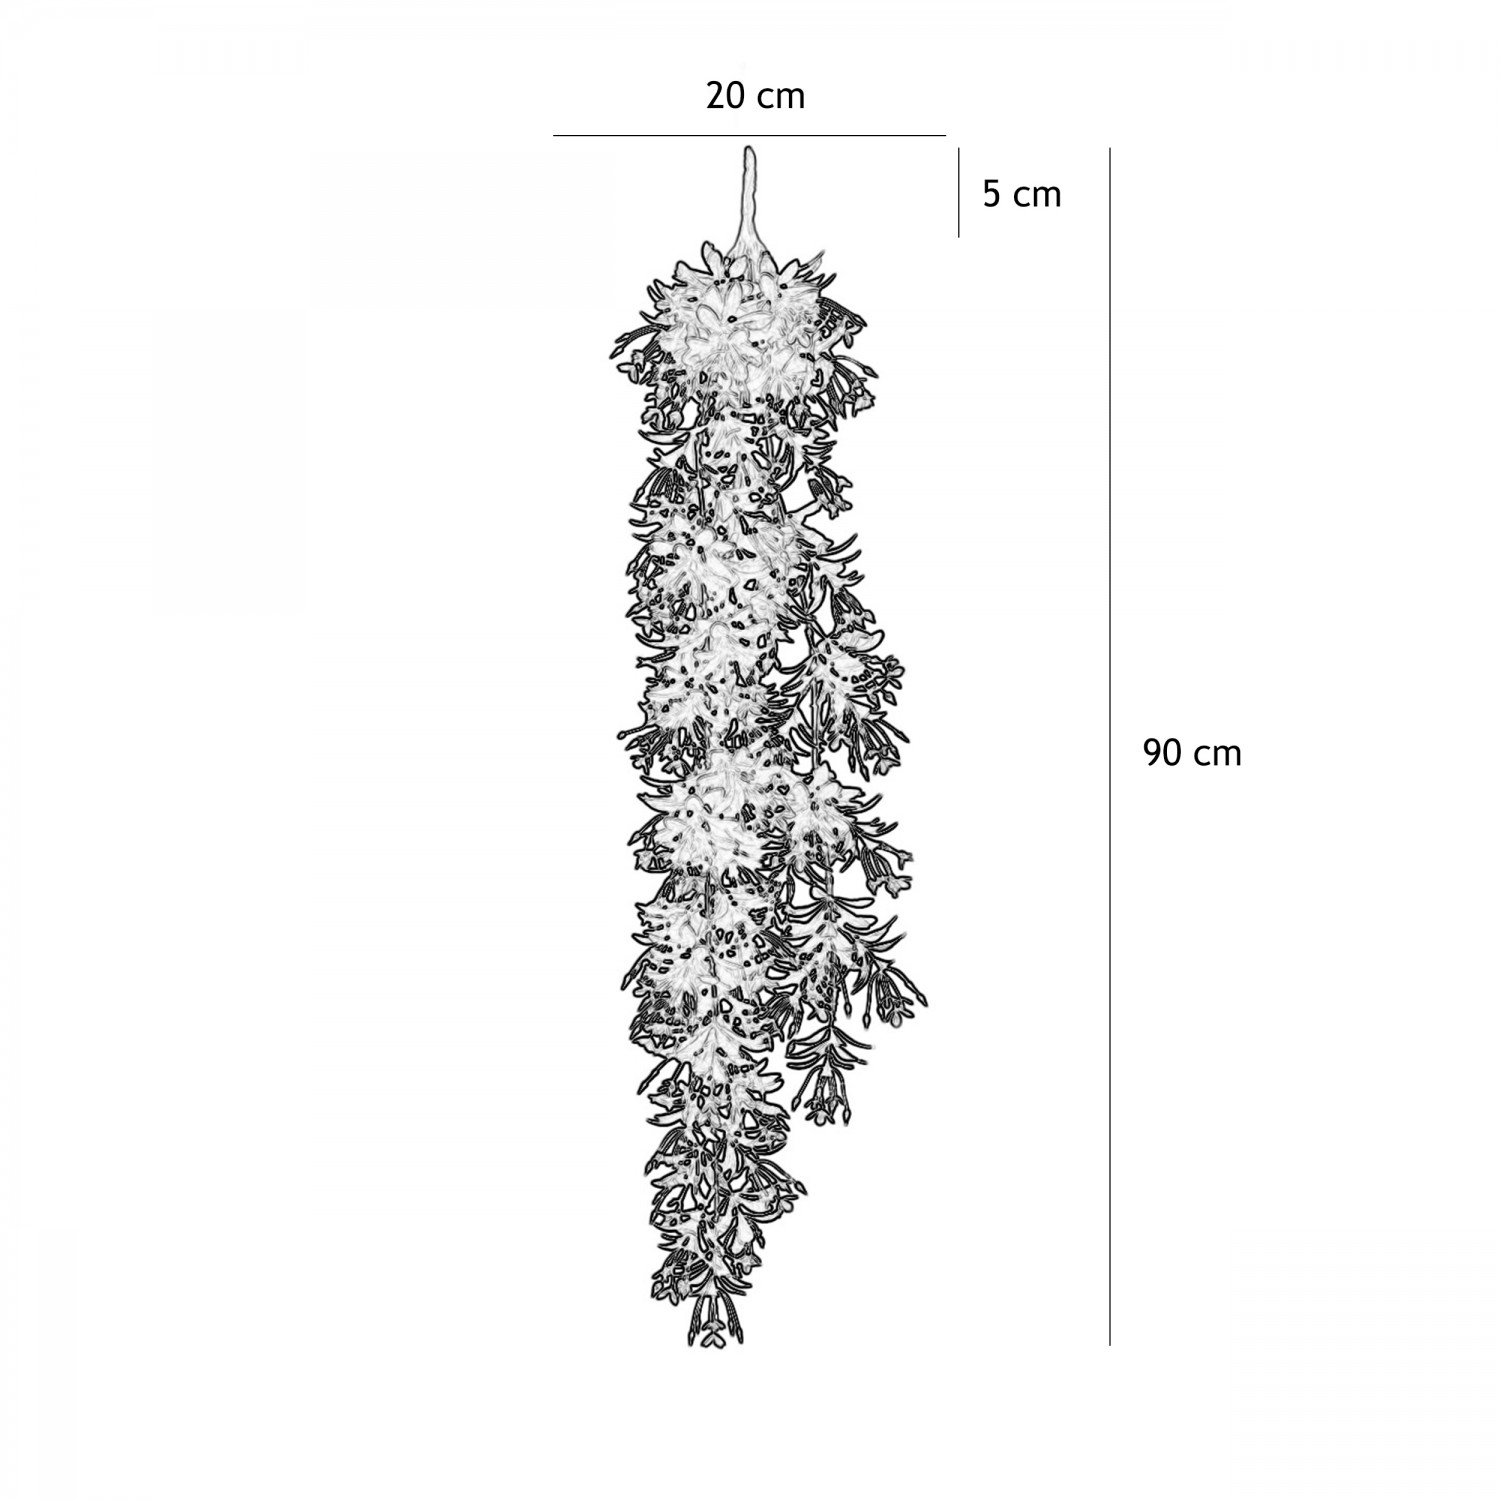 Chute plante artificielle violet 90cm lot de 2 graphique avec les dimensions